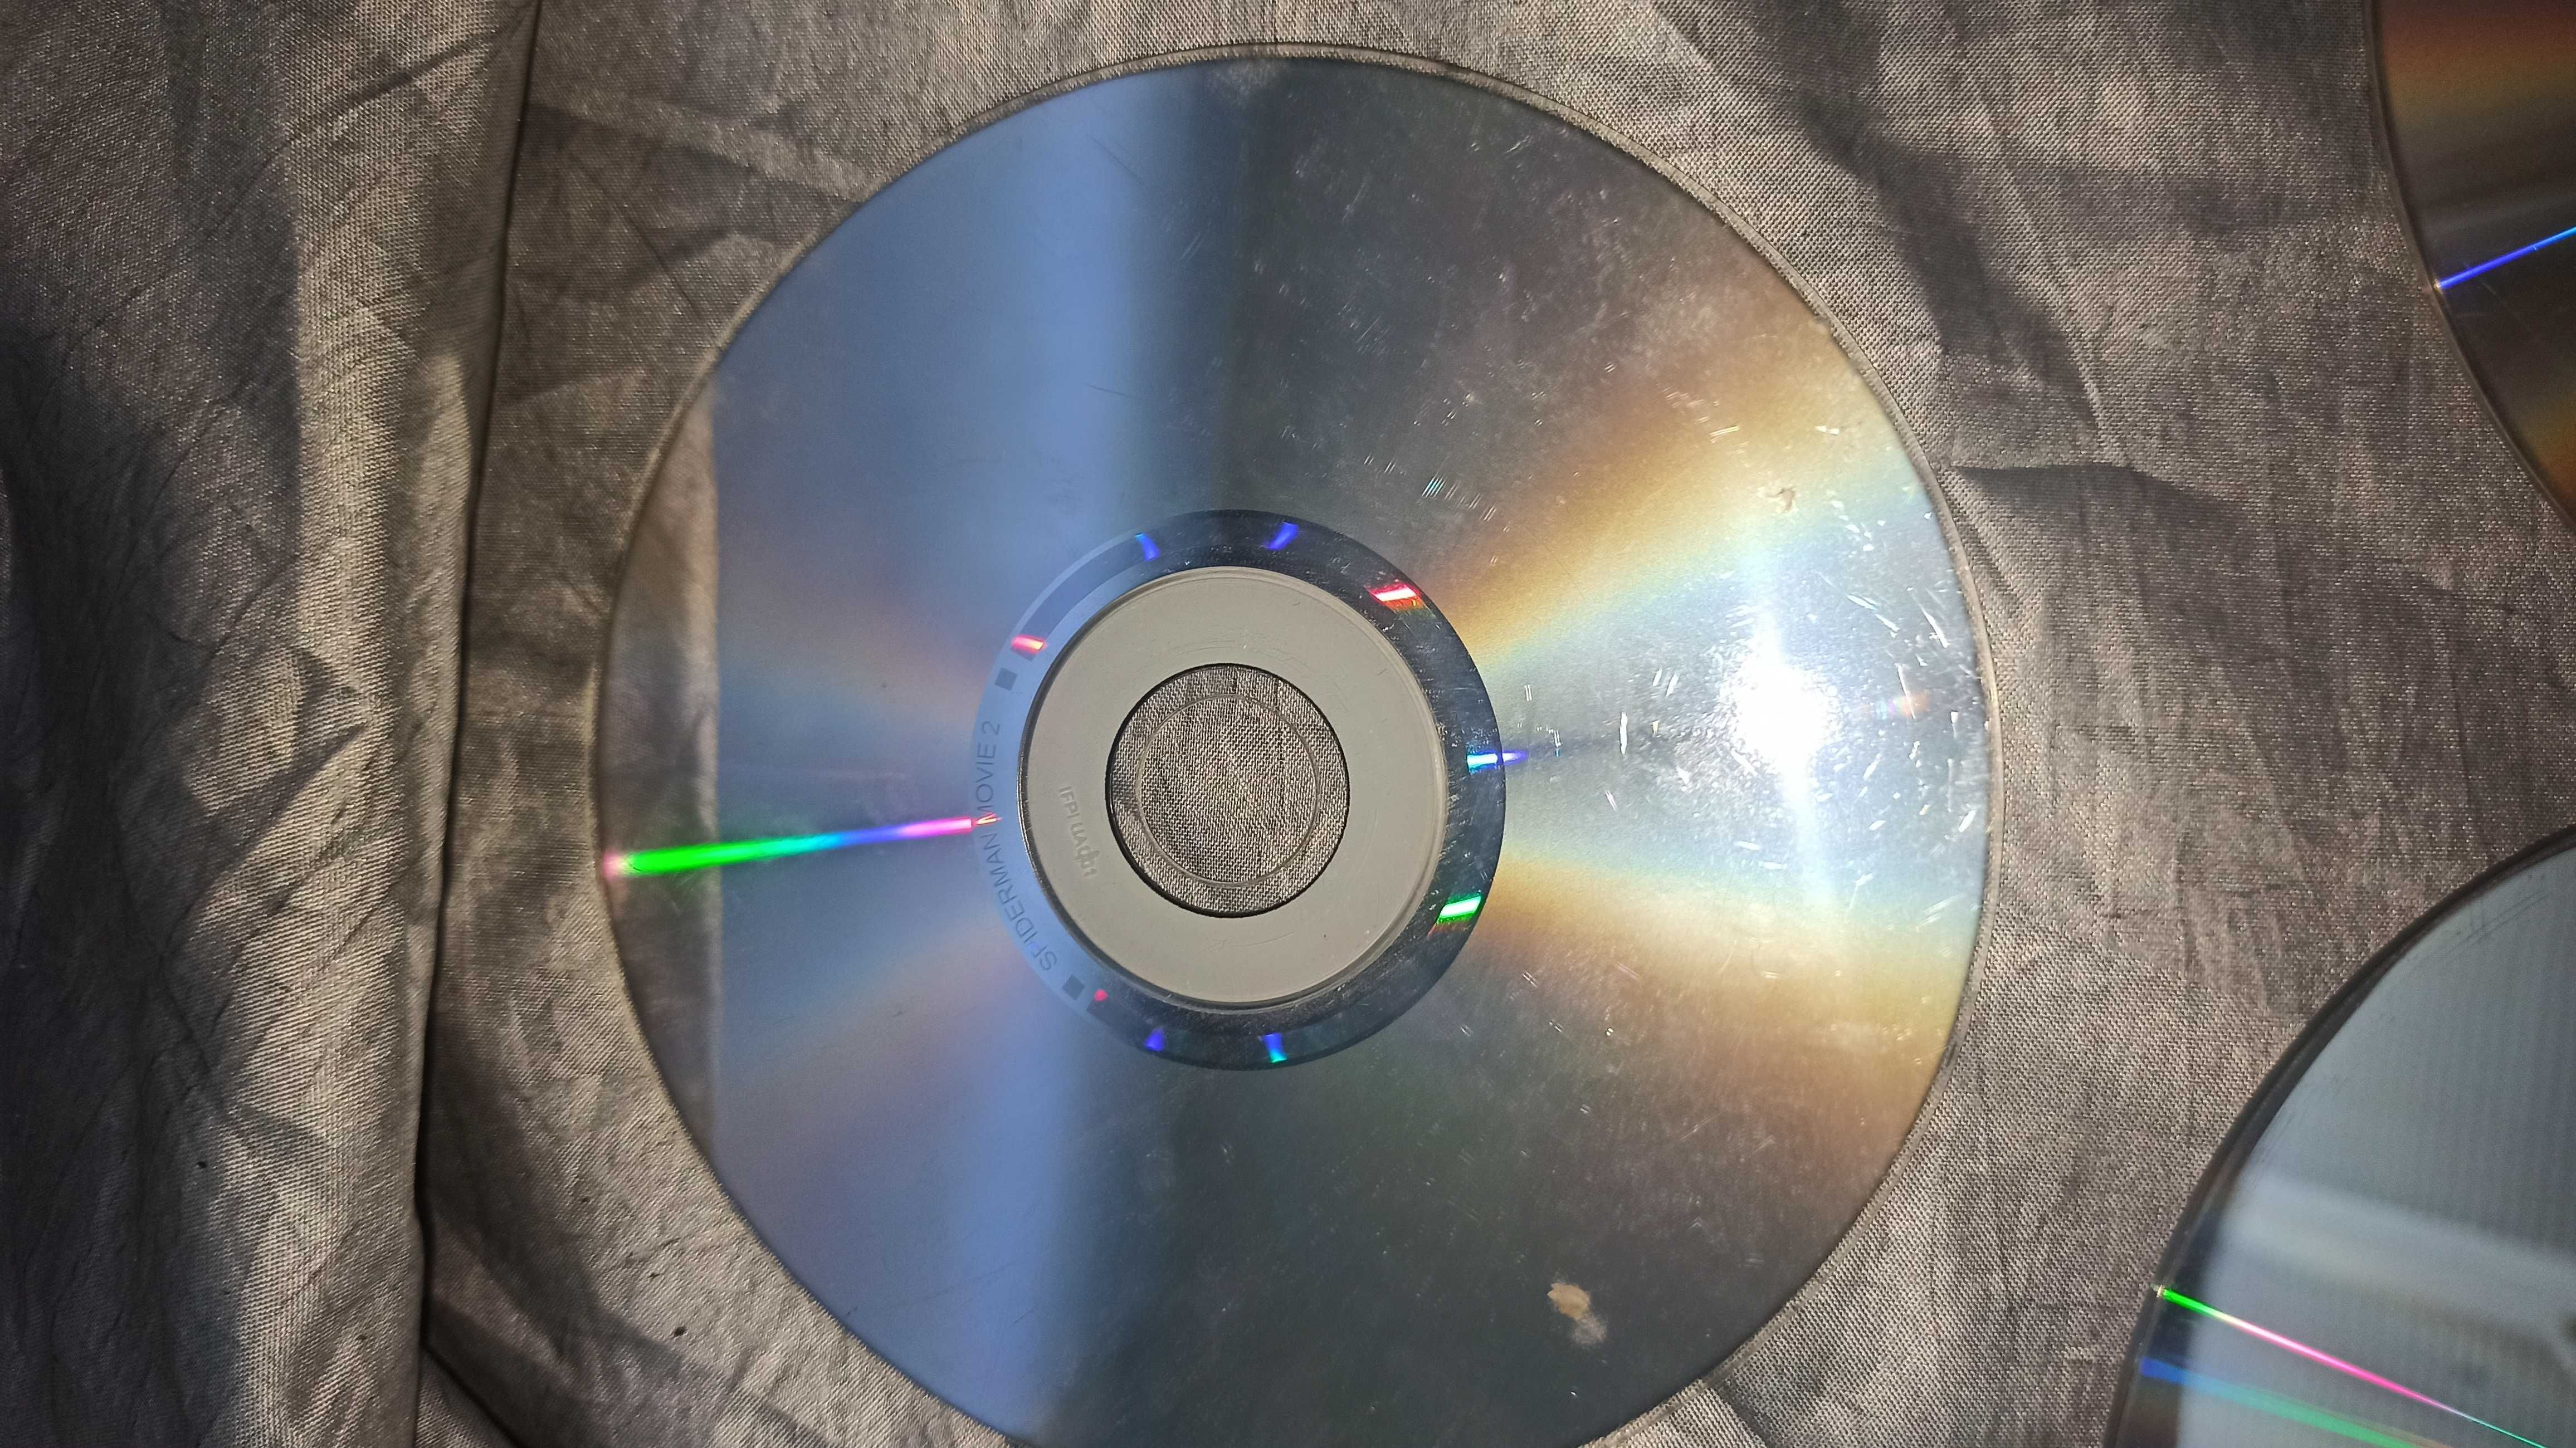 Комплект дисков для PC с играми Heroes 5 , CS , Человек паук 2